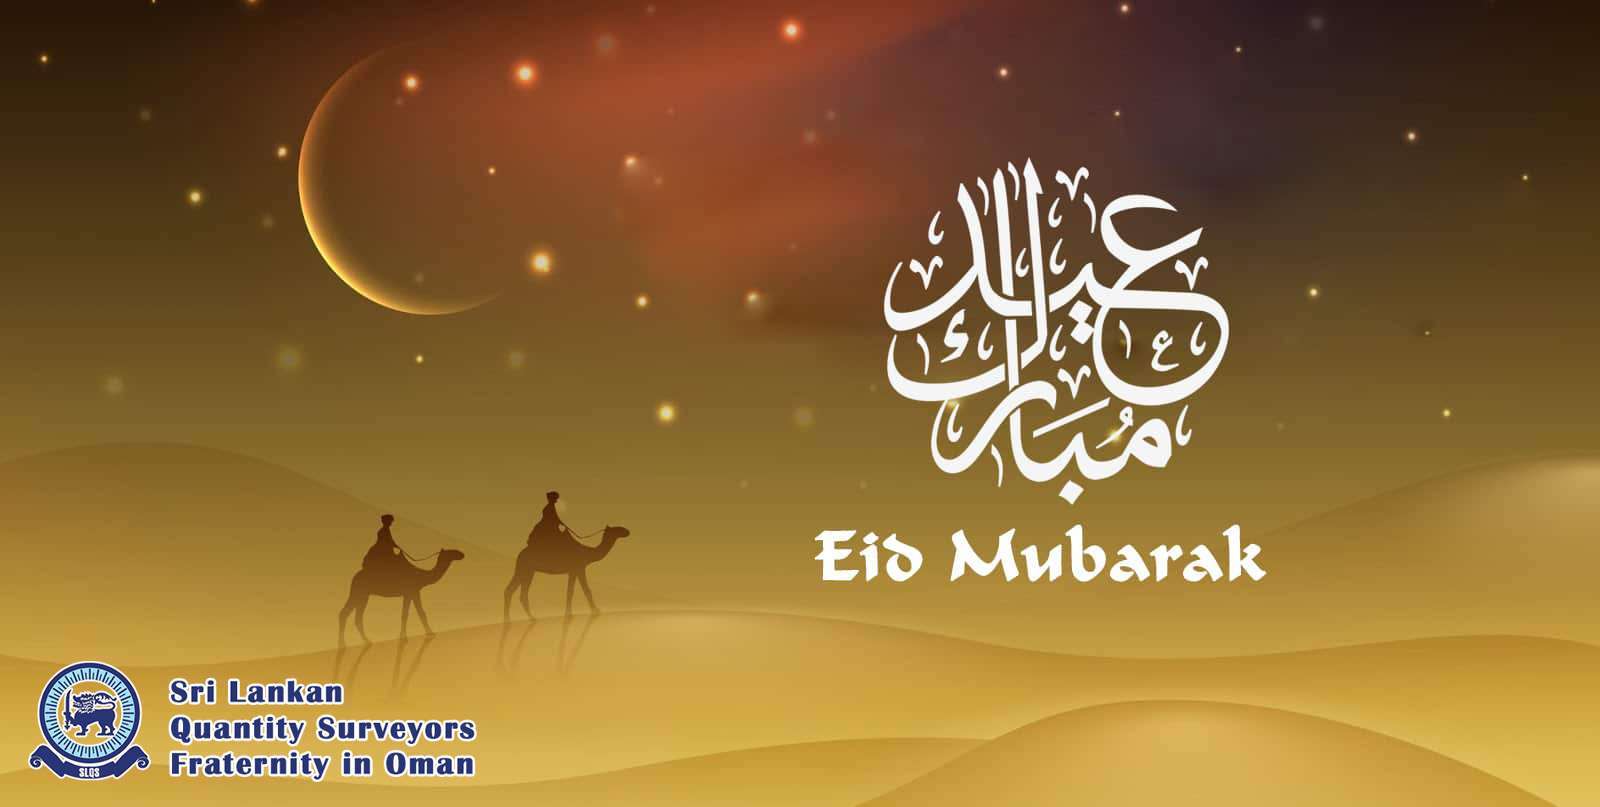 Wishing you a very Happy Eid al-Adha